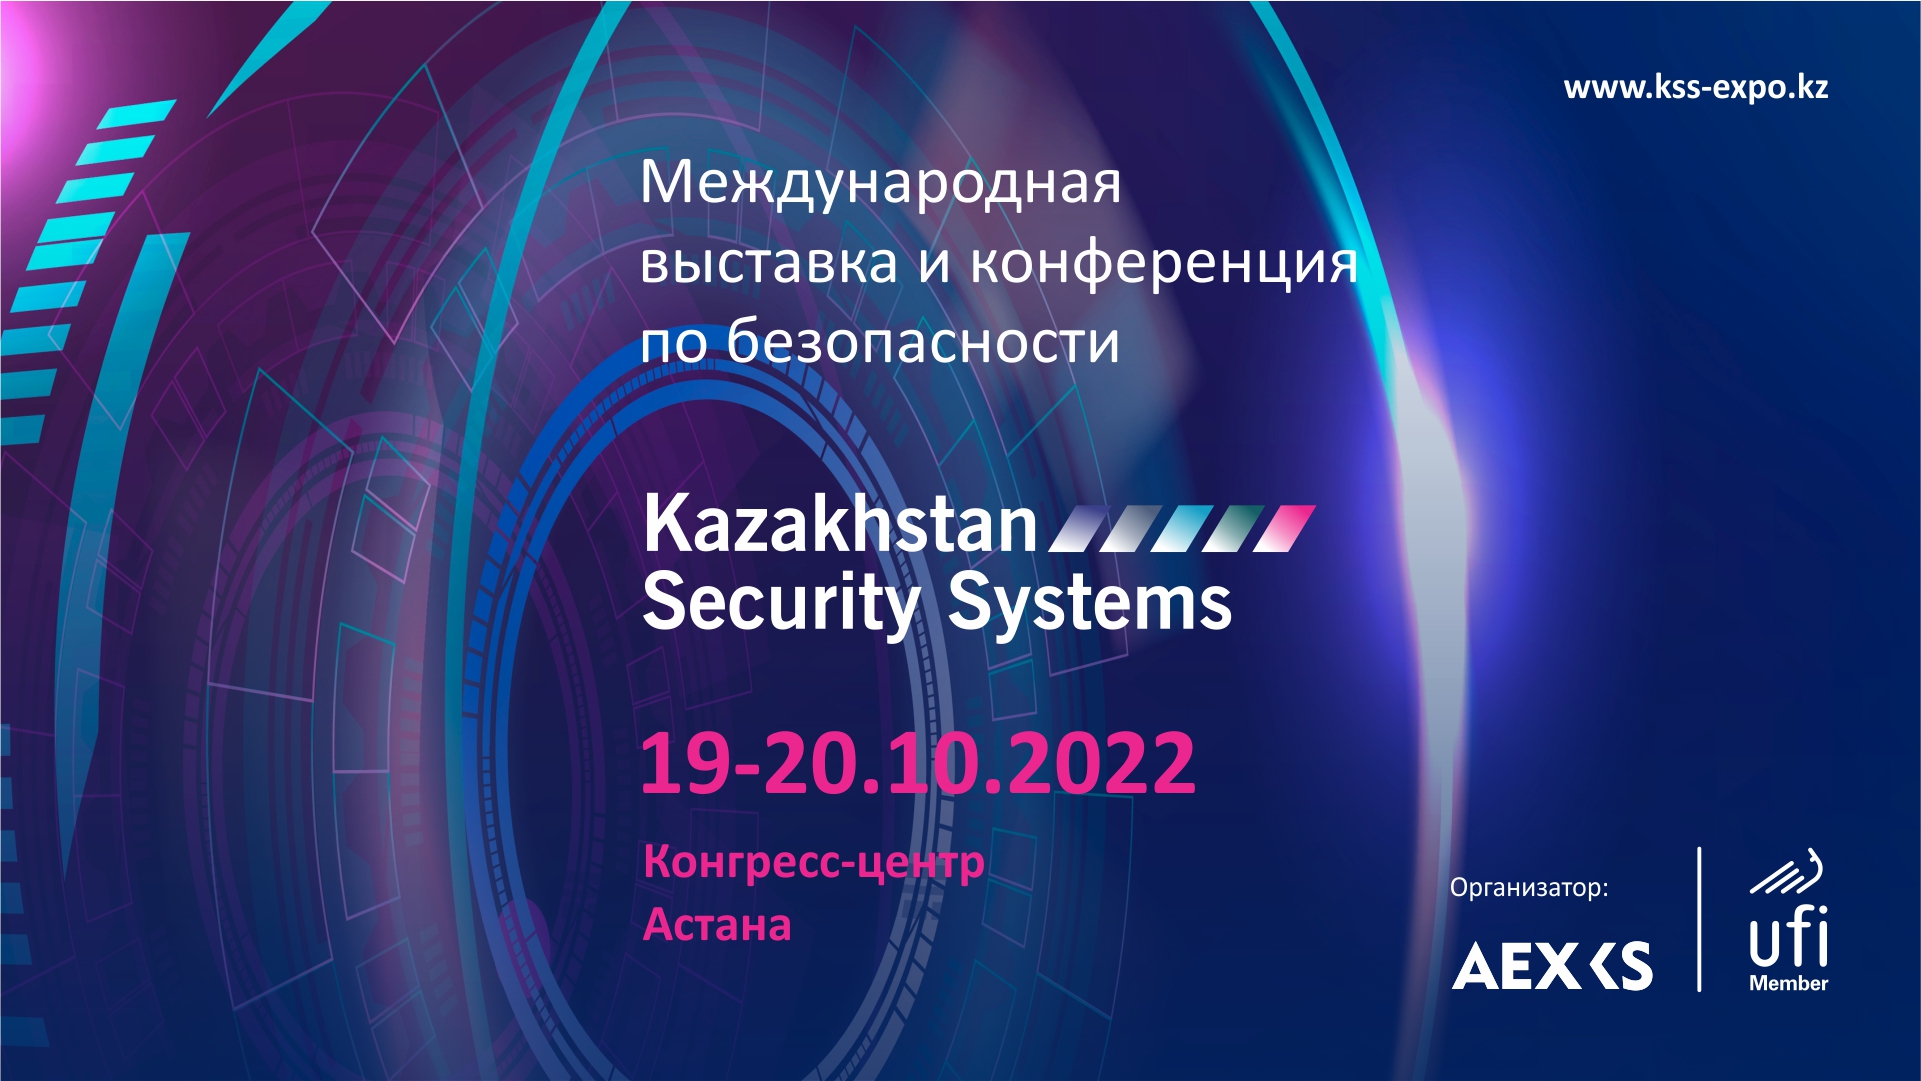 VIII Международная выставка-конференция по безопасности Kazakhstan Security Systems пройдёт в Конгресс-центре